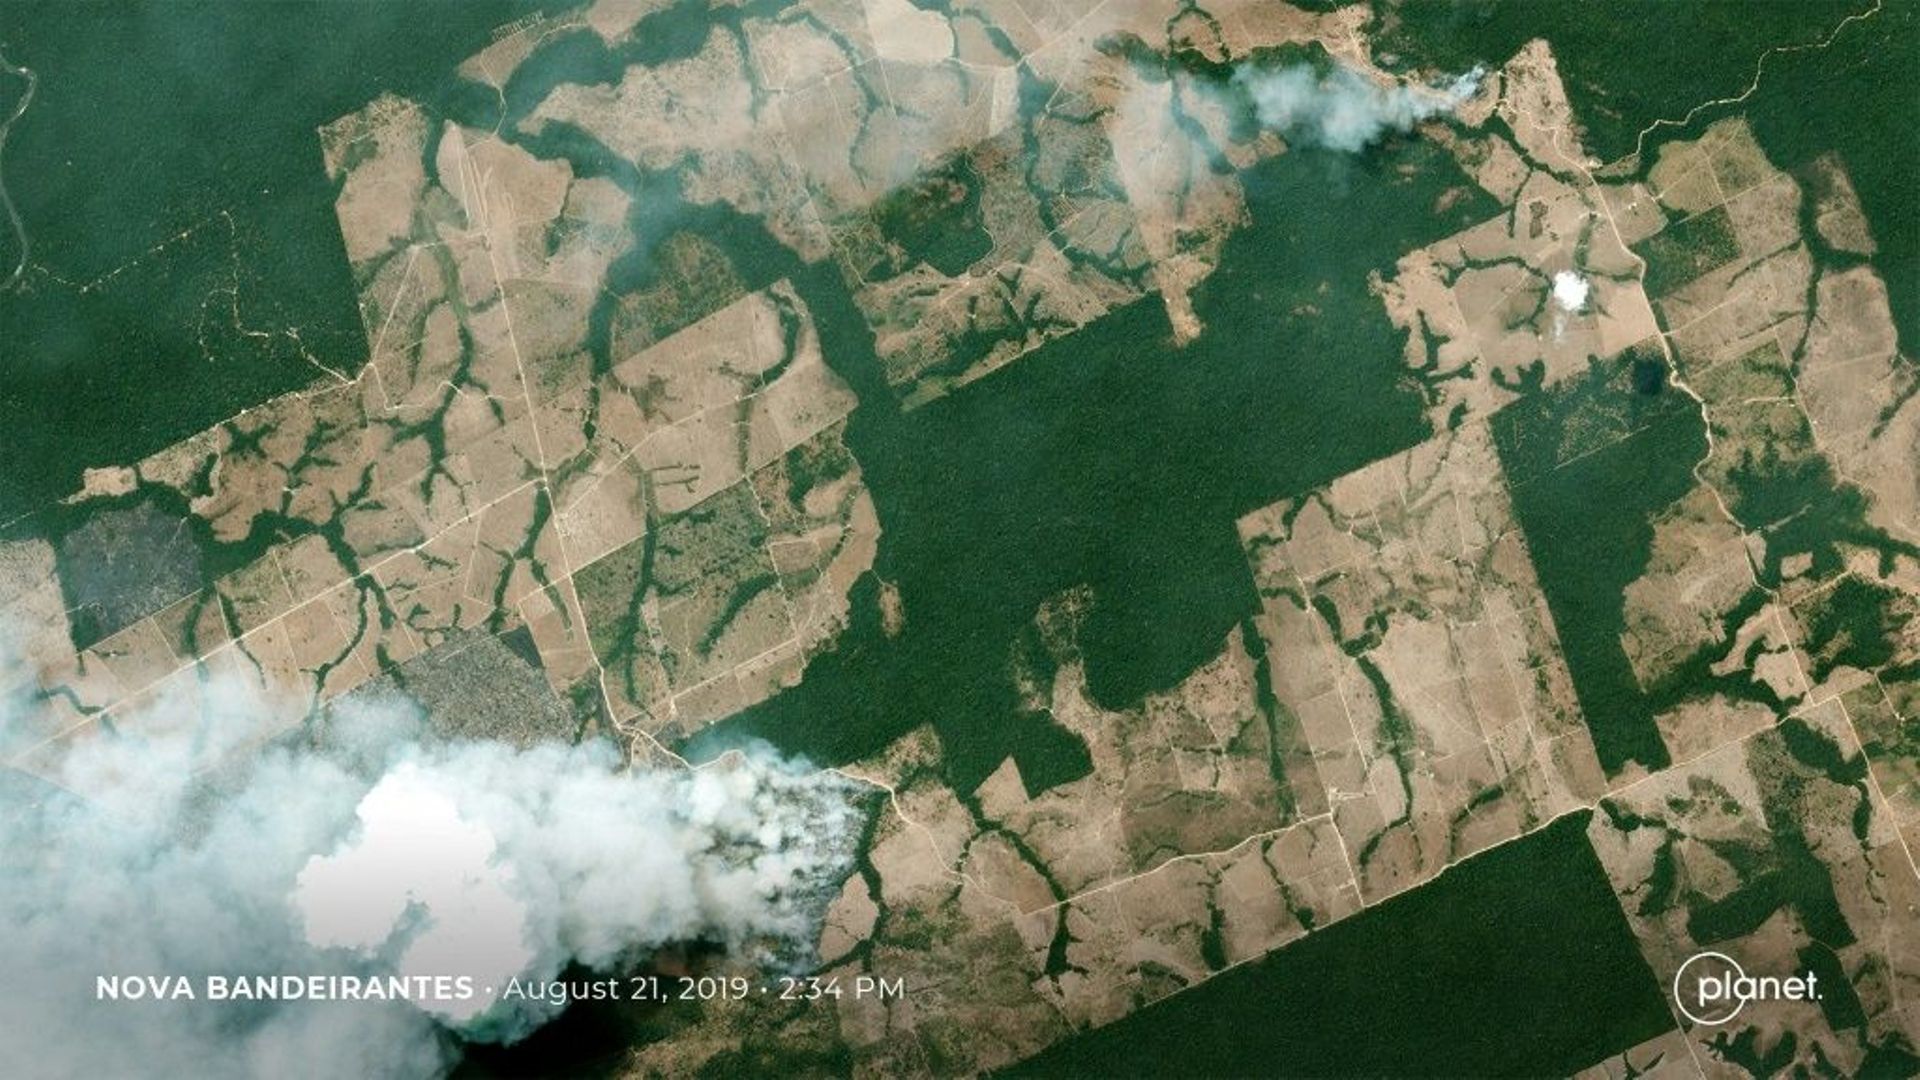 Pourquoi et comment une partie de l'Amazonie est-elle en train de brûler? Des feux surtout volontaires